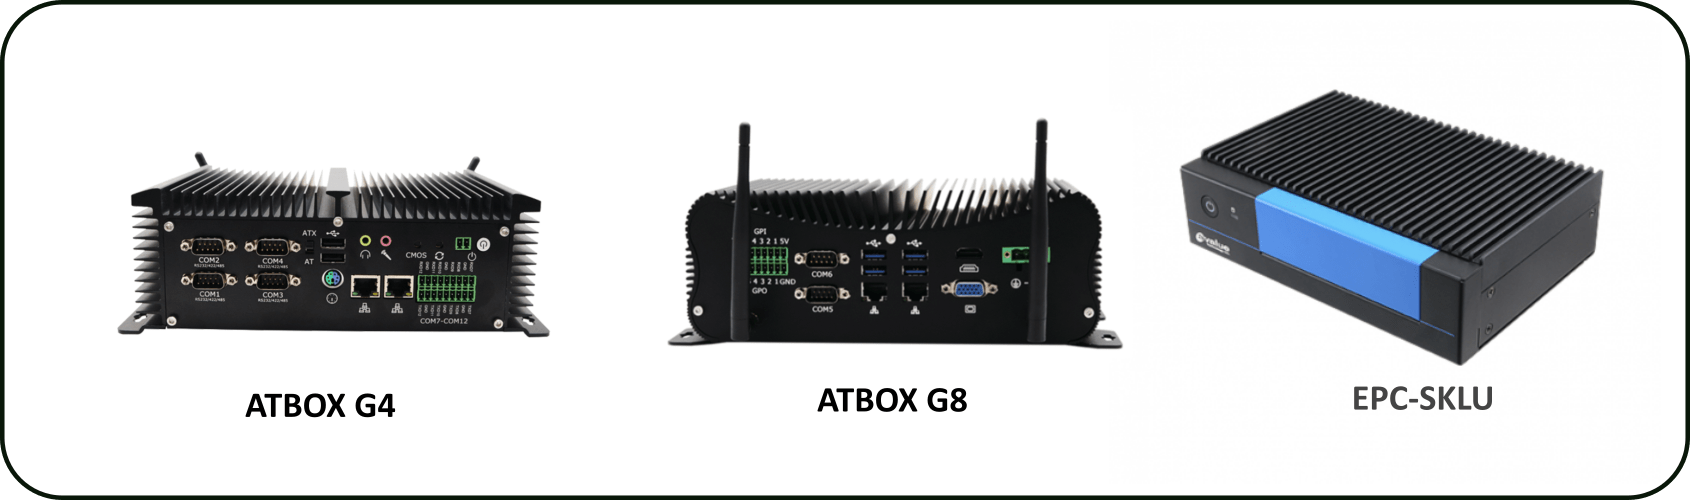 ATBOX G4, ATBOX G8 và Avalue EPC-SKLU